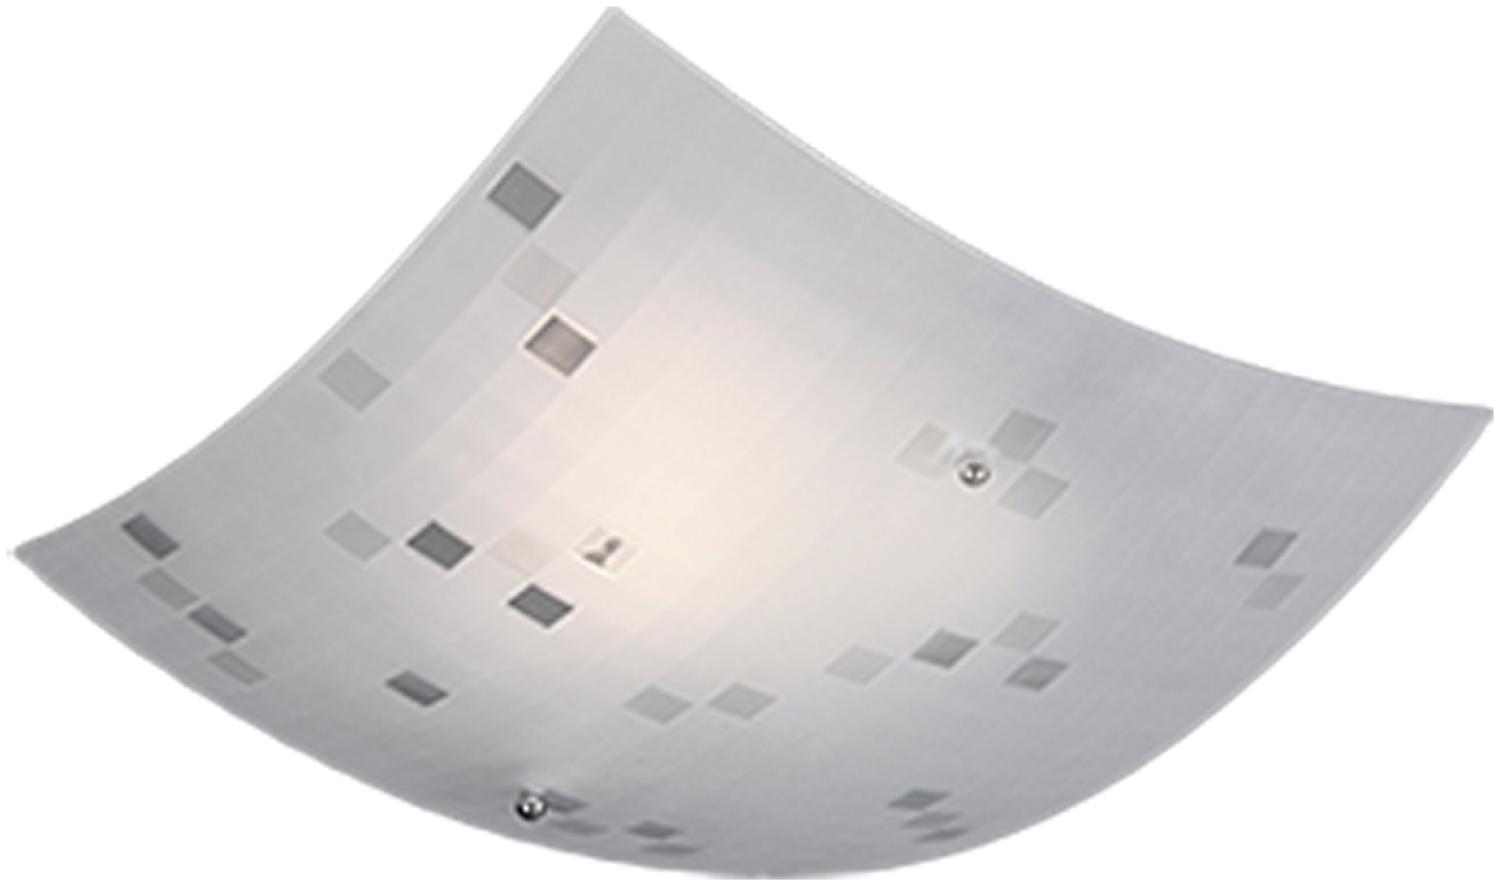 Eckige LED Deckenschale 30x30cm, Glaslampenschirm satiniert in weiß/grau Bild 1